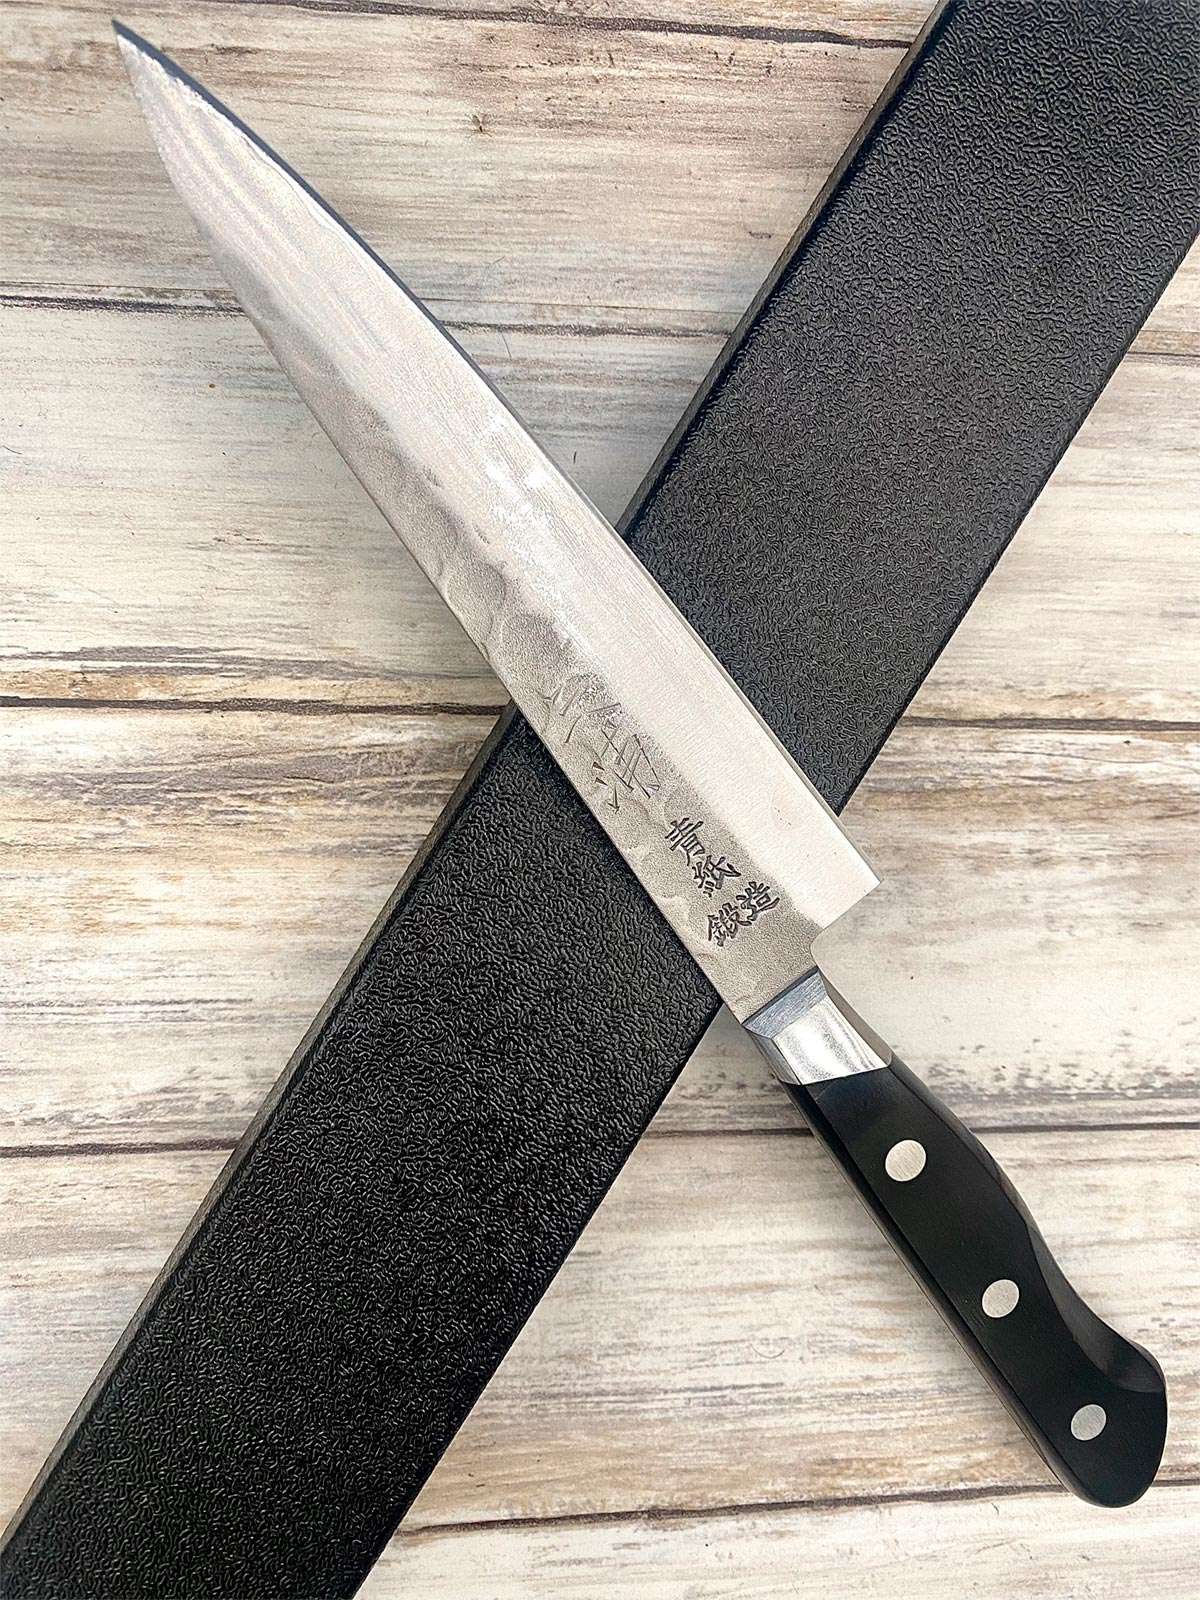 Acheter un Couteau Japonais artisanal Petty aogami 13,5 cm Tsuchime Nashiji à Paris meilleur vente de couteaux de cuisine nippon grande marque de qualité